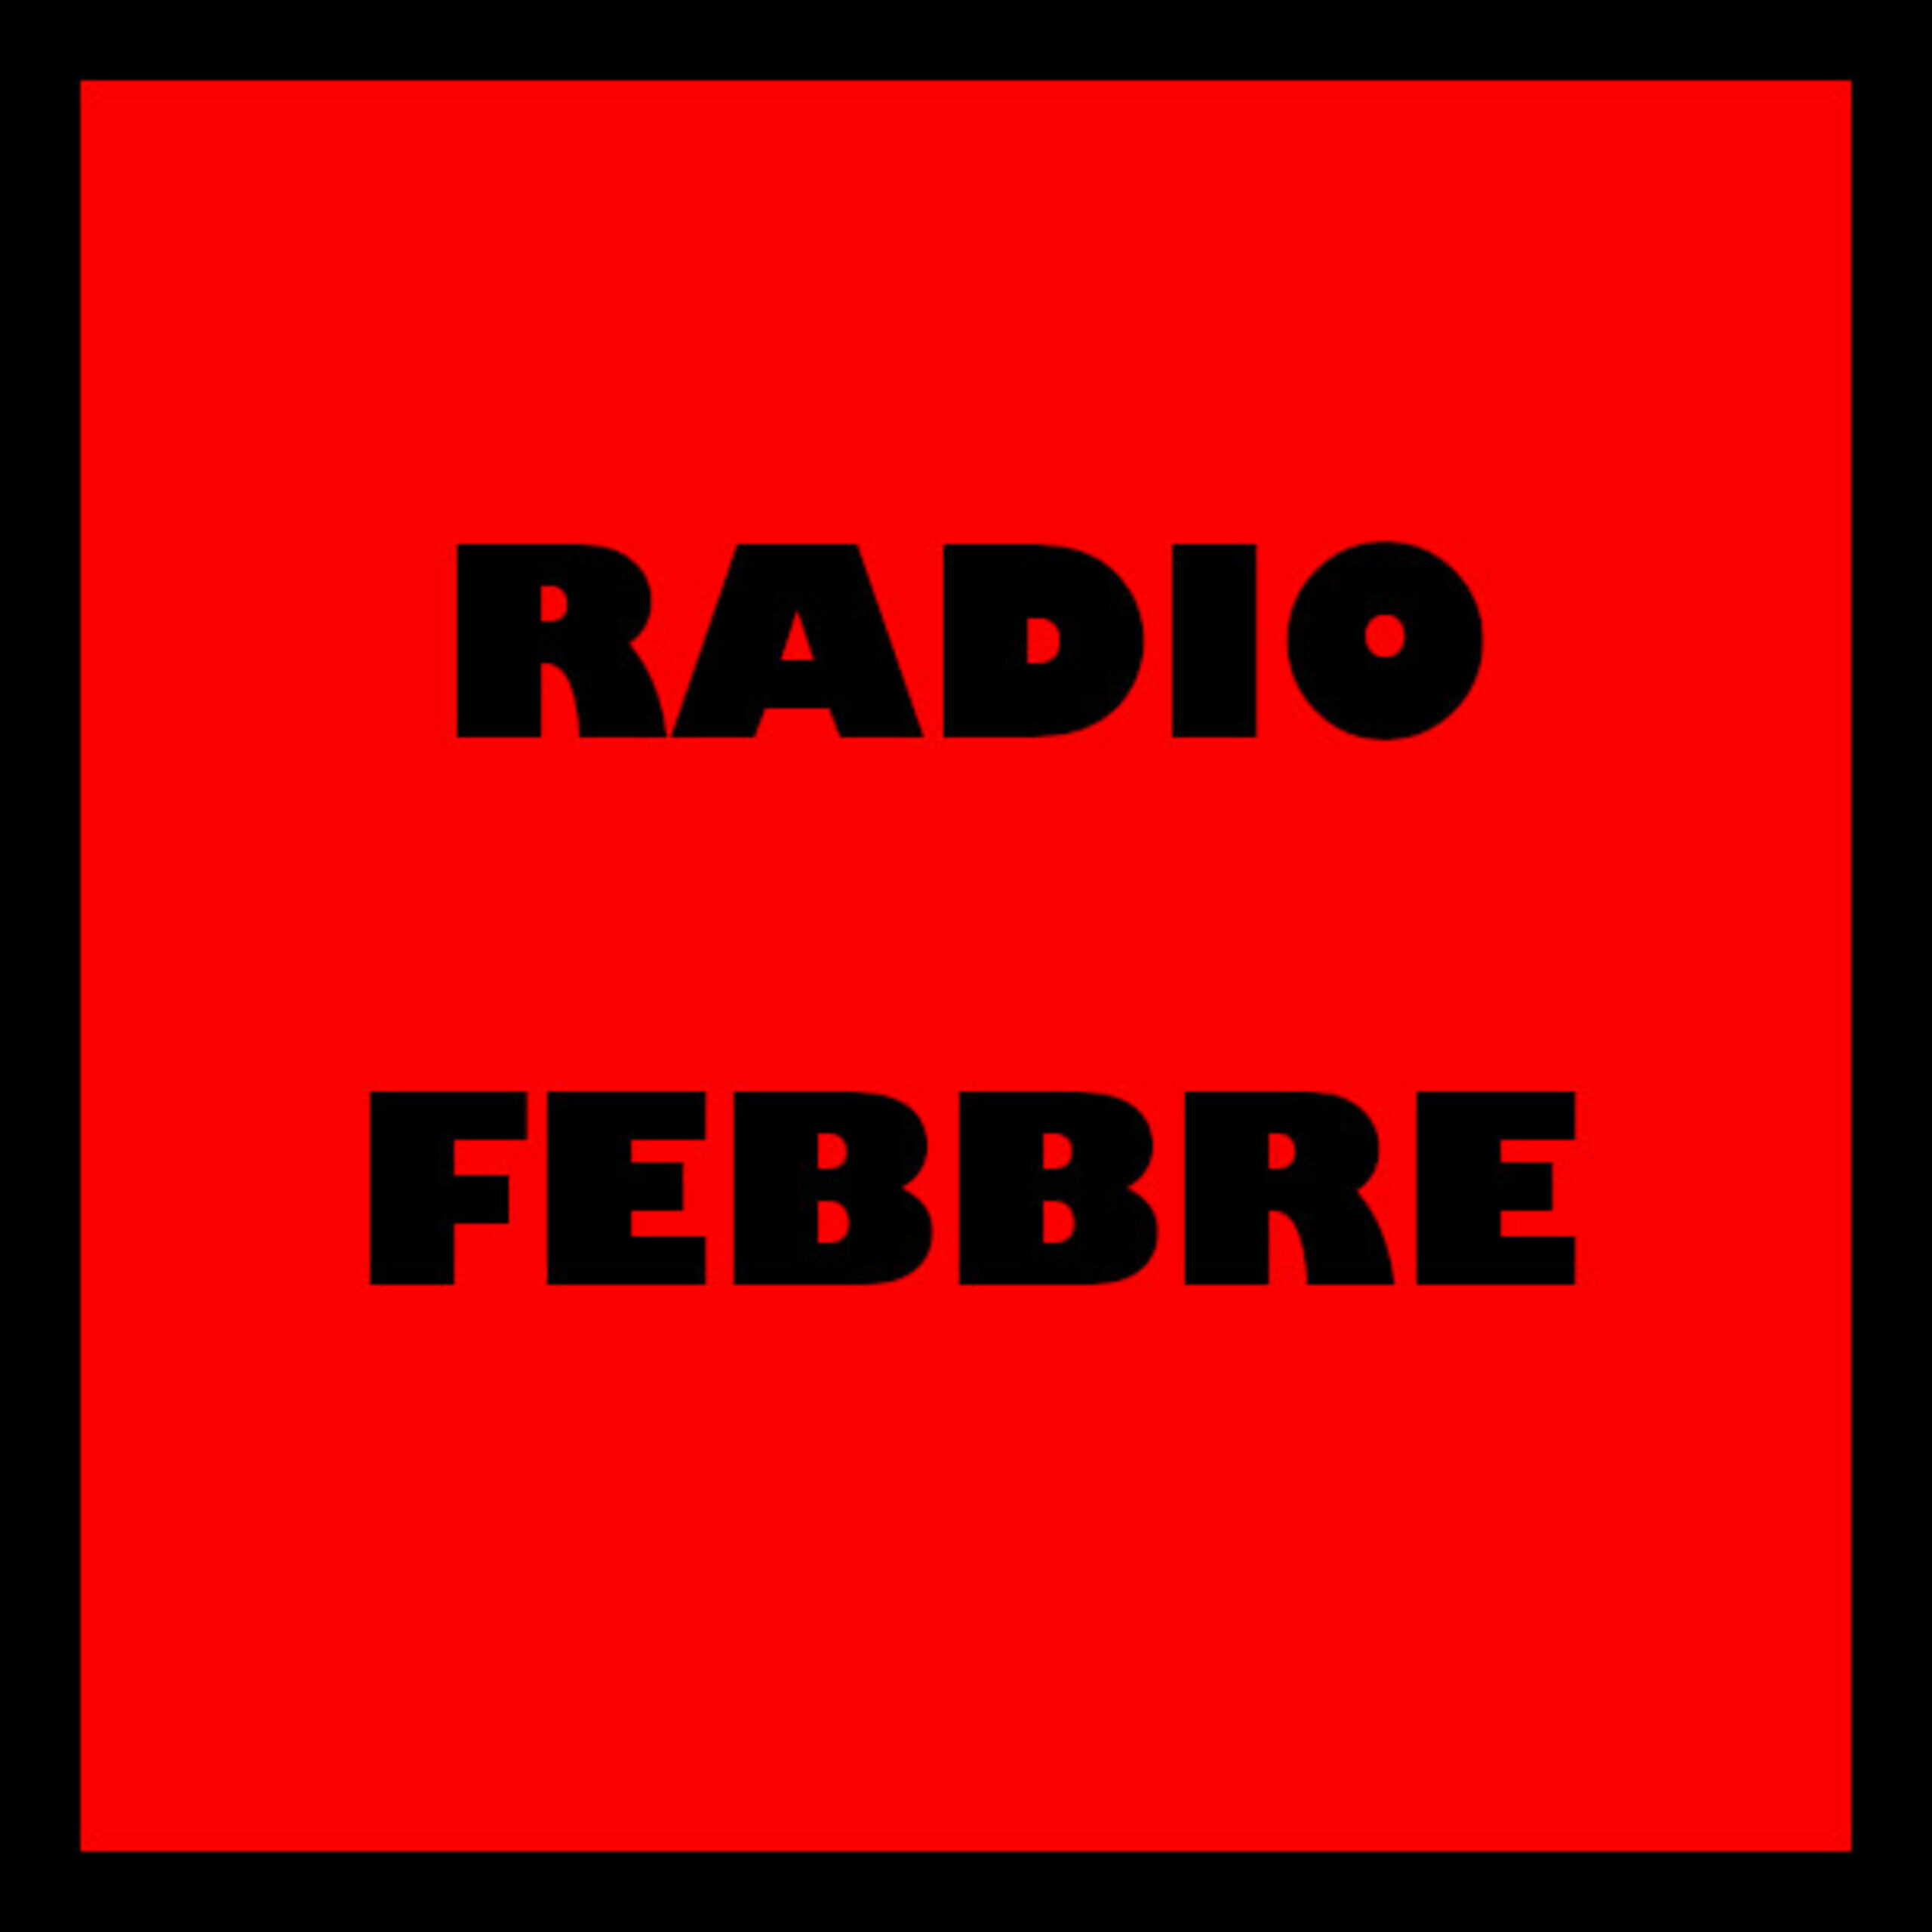 www.lafebbre.ch – WEB RADIO AMATORIALE UFFICIALE